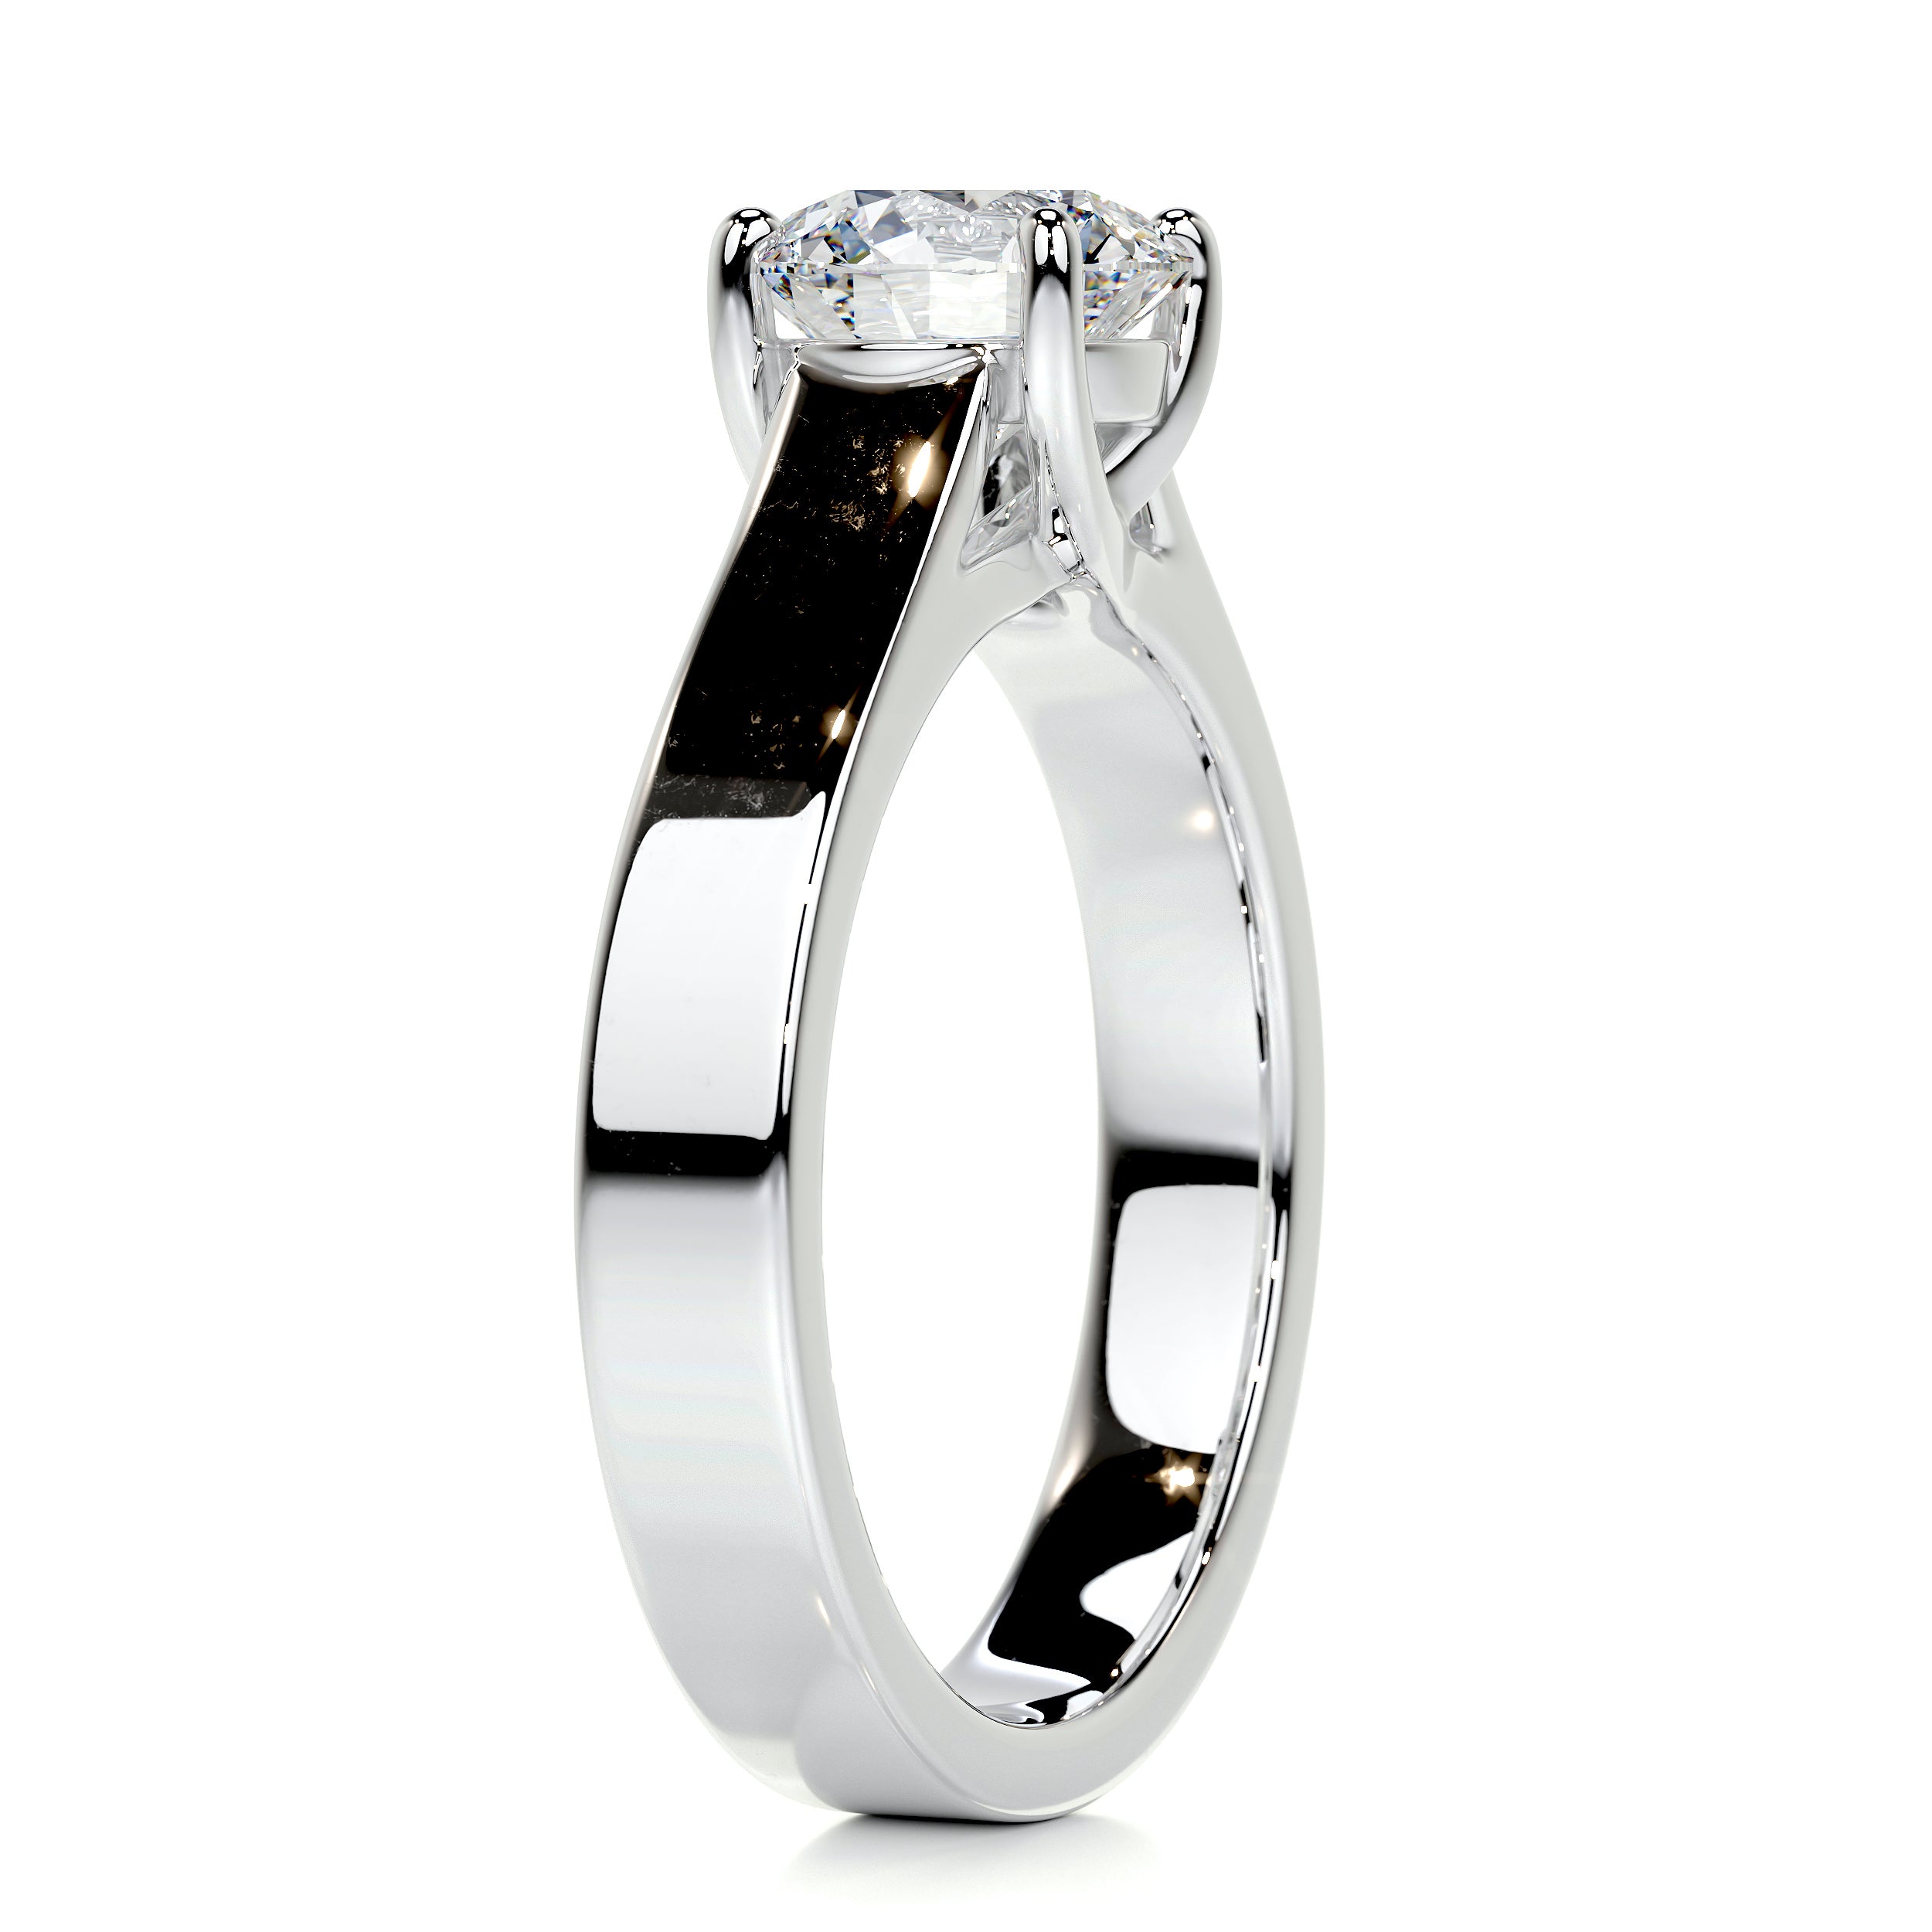 Nola Diamond Engagement Ring   (1 Carat) -14K White Gold